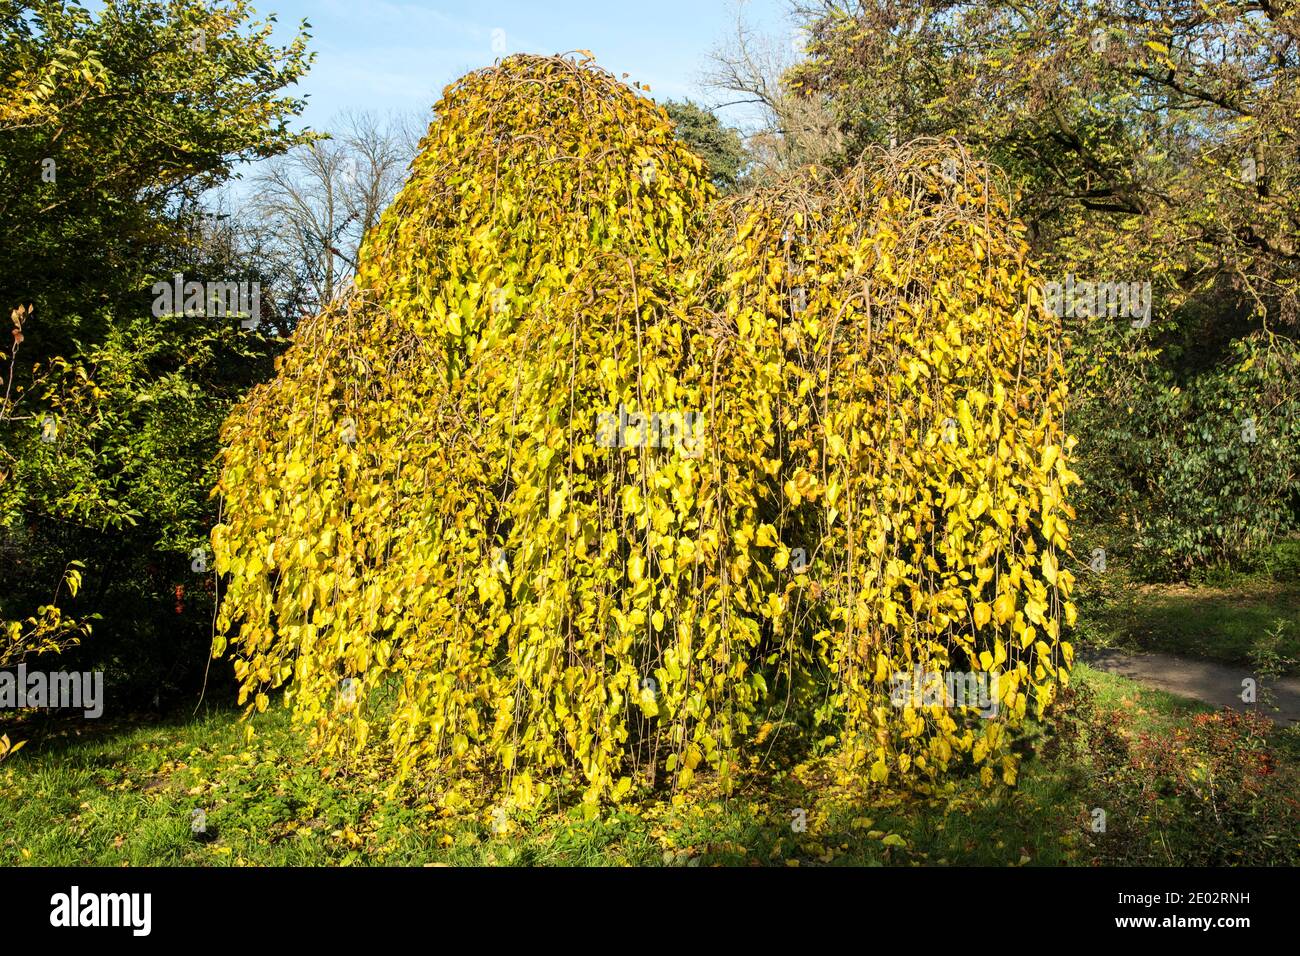 Morus alba 'Pendula' in Belmonte Arboretum in Wageningen, Netherlands Stock Photo